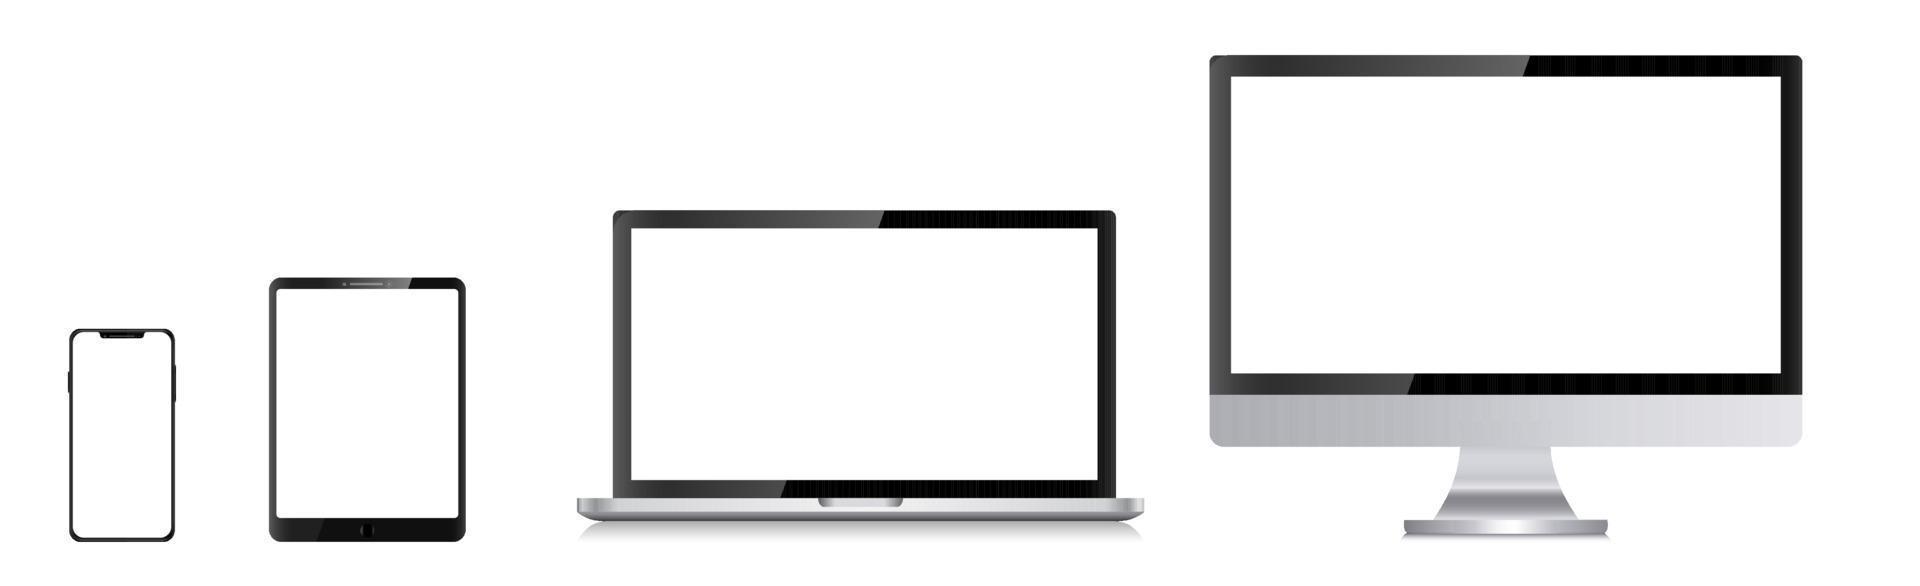 Gerätebildschirm-Set - Laptop-Smartphone-Tablet-Computer-Monitor. Vektor